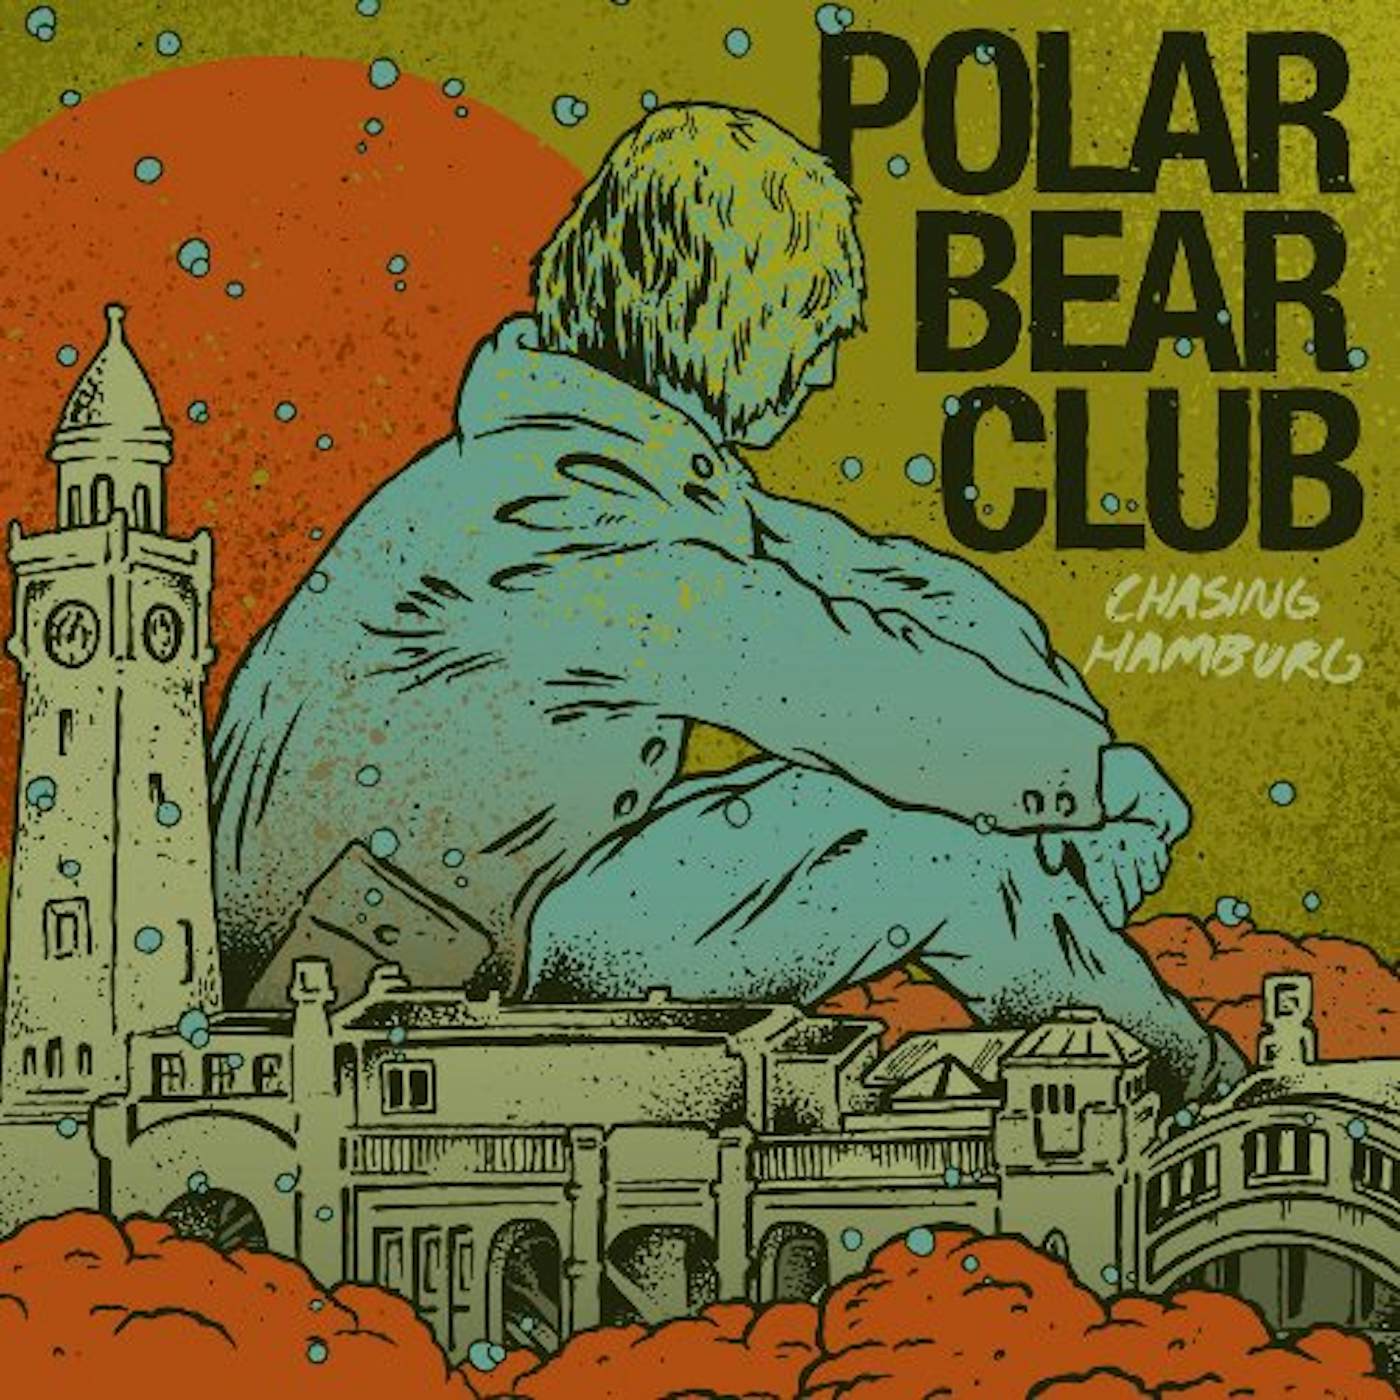 Polar Bear Club Chasing Hamburg Vinyl Record